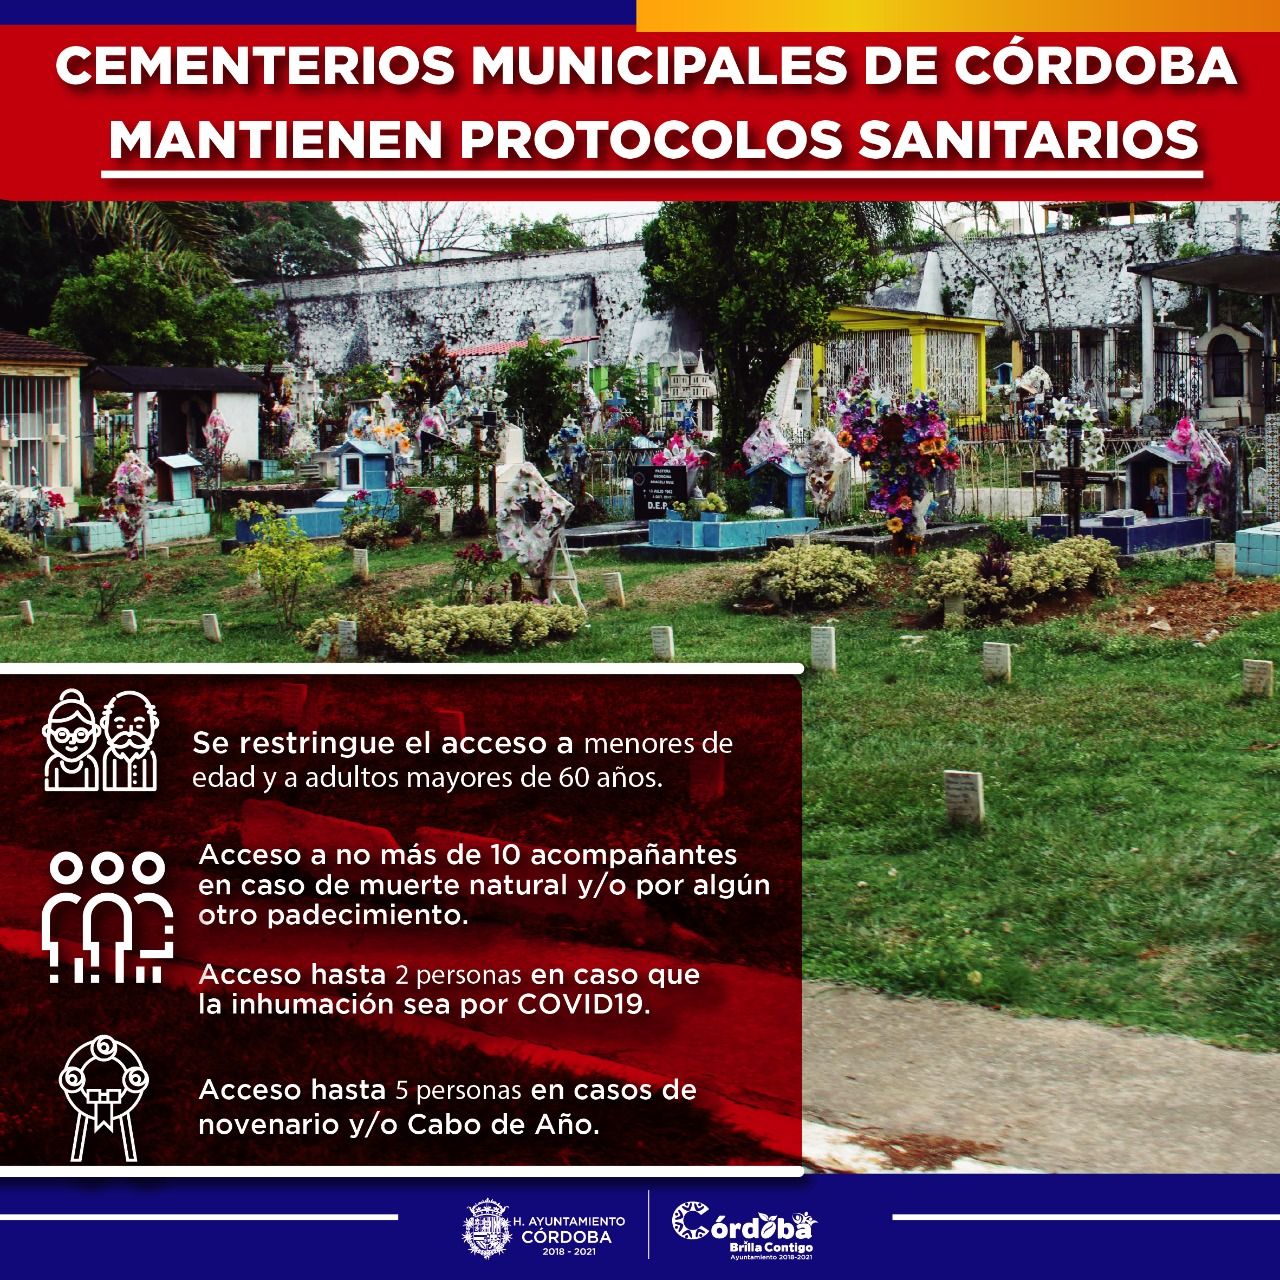 Cementerios municipales de Córdoba mantienen protocolos sanitarios
